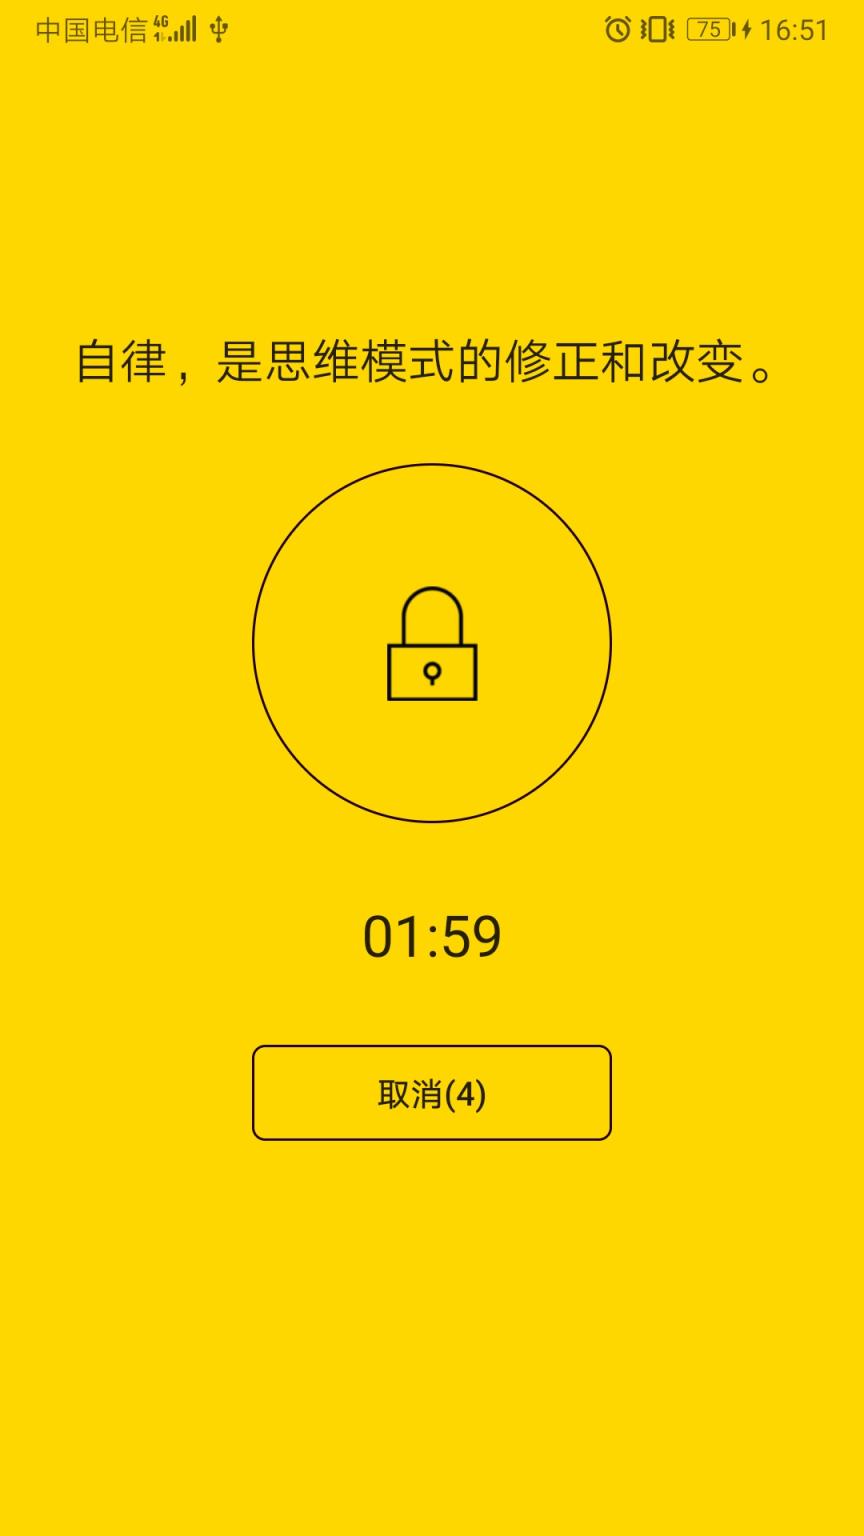 爱游戏娱乐官网app下载九刃新手卡刀剑快速进王